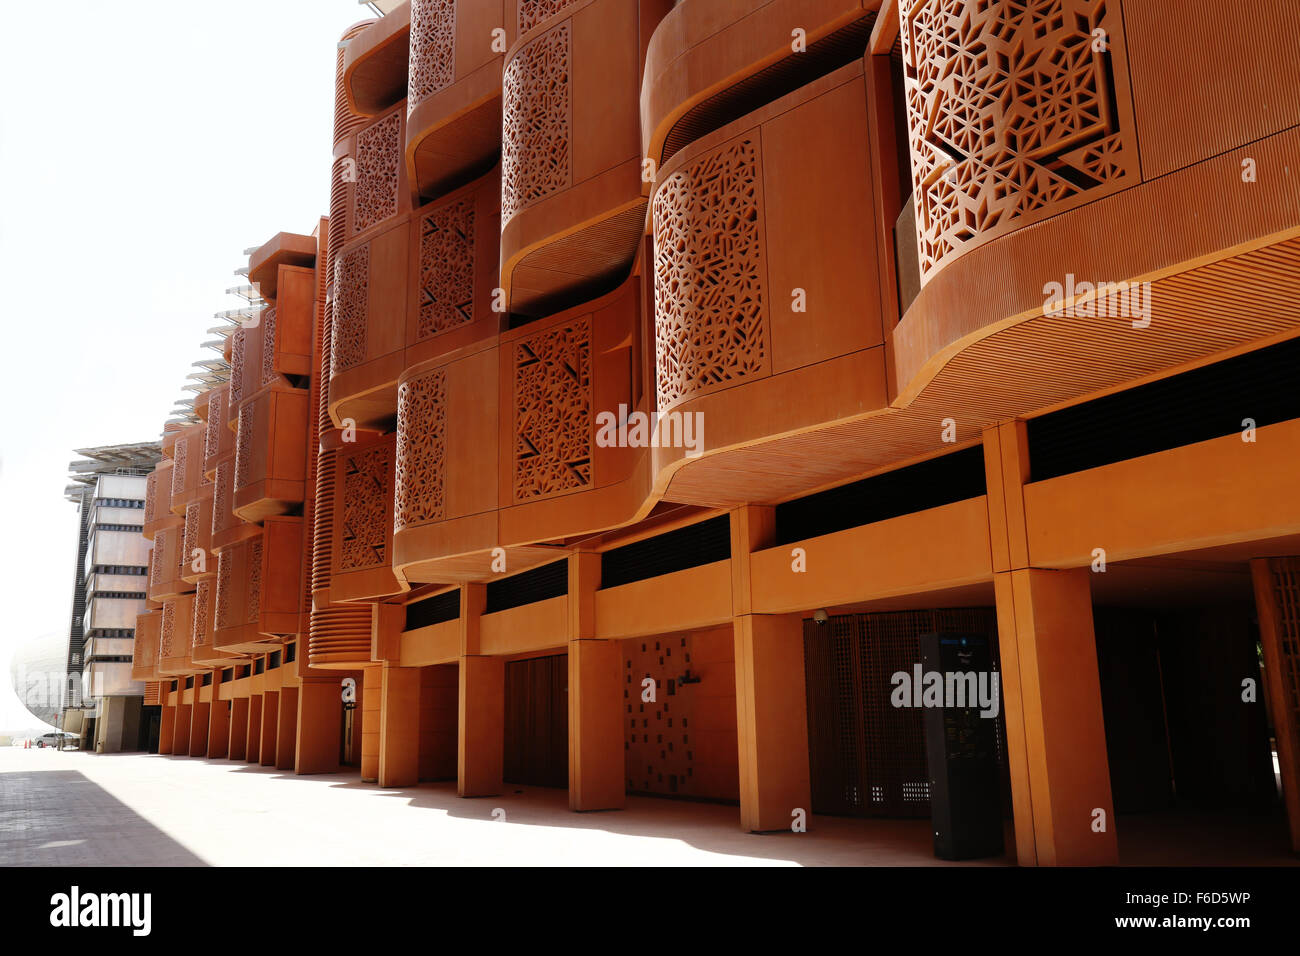 "Zero Carbon Masdar City, Abu Dhabi in den Vereinigten Arabischen Emiraten - Gebäude entworfen, um maximale Licht ohne Strom. Stockfoto